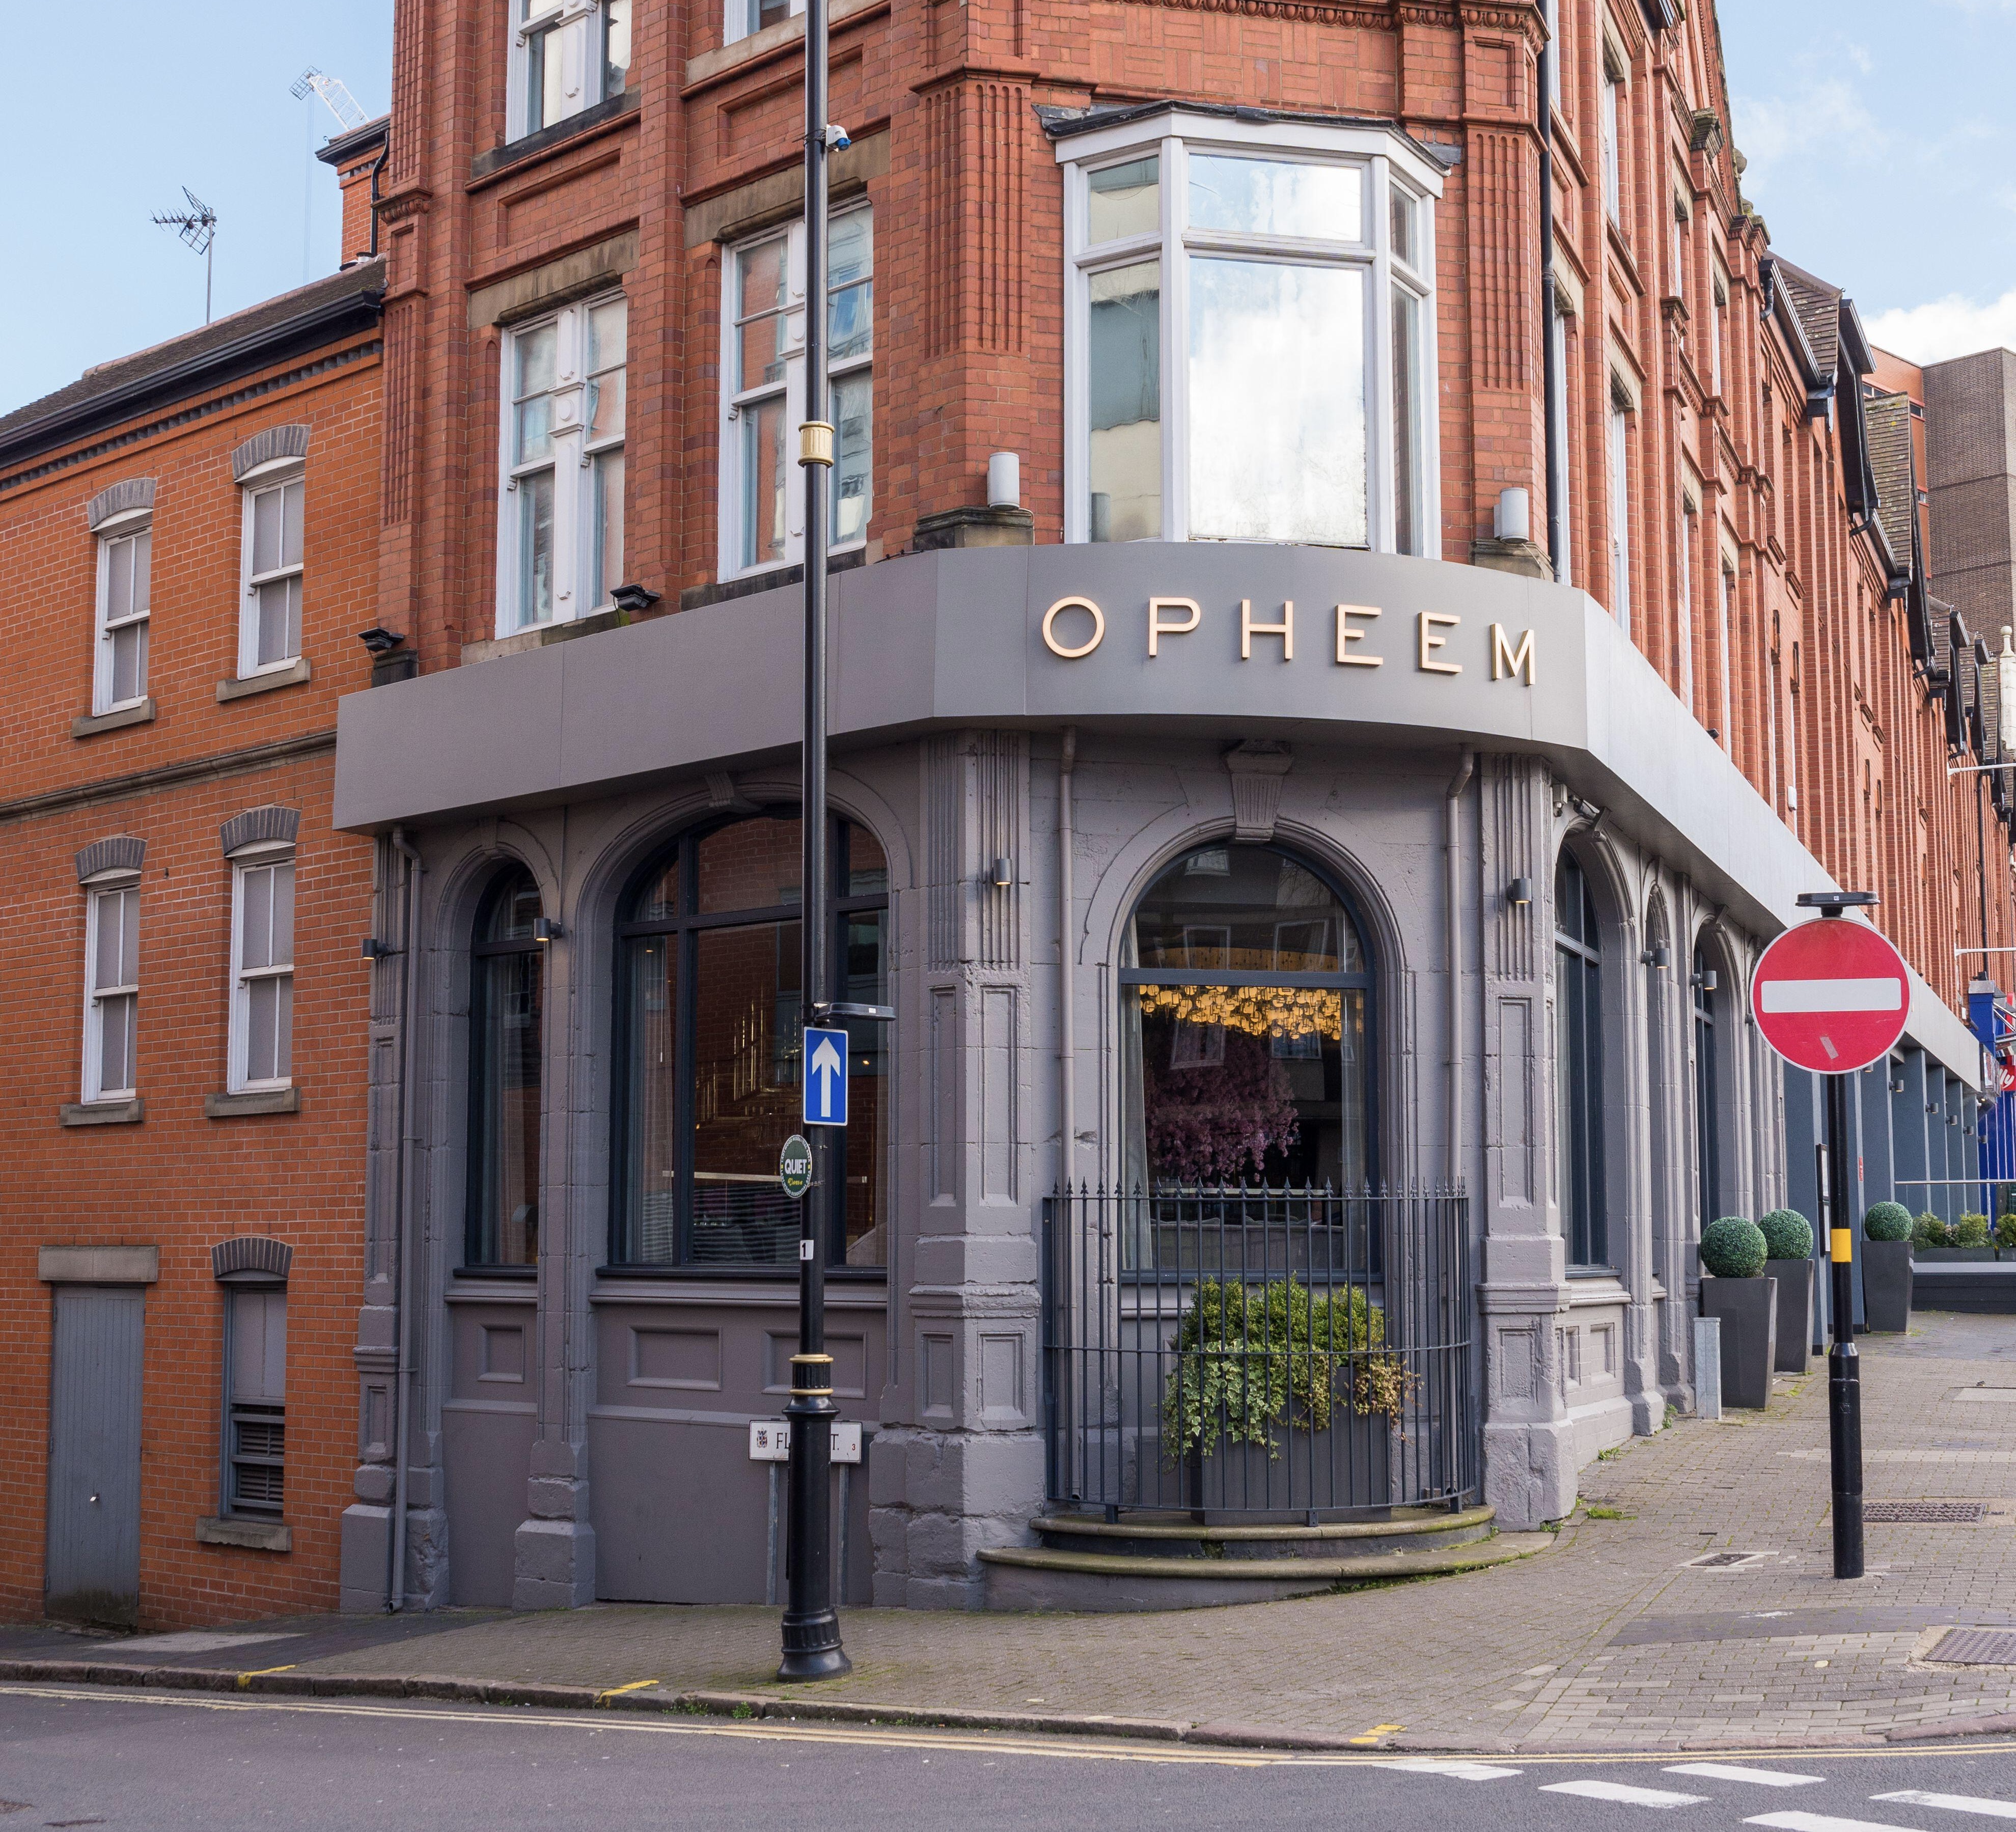 Opheem michelin starred high end indian restaurant run by Aktar Islam in Birmingham, UK